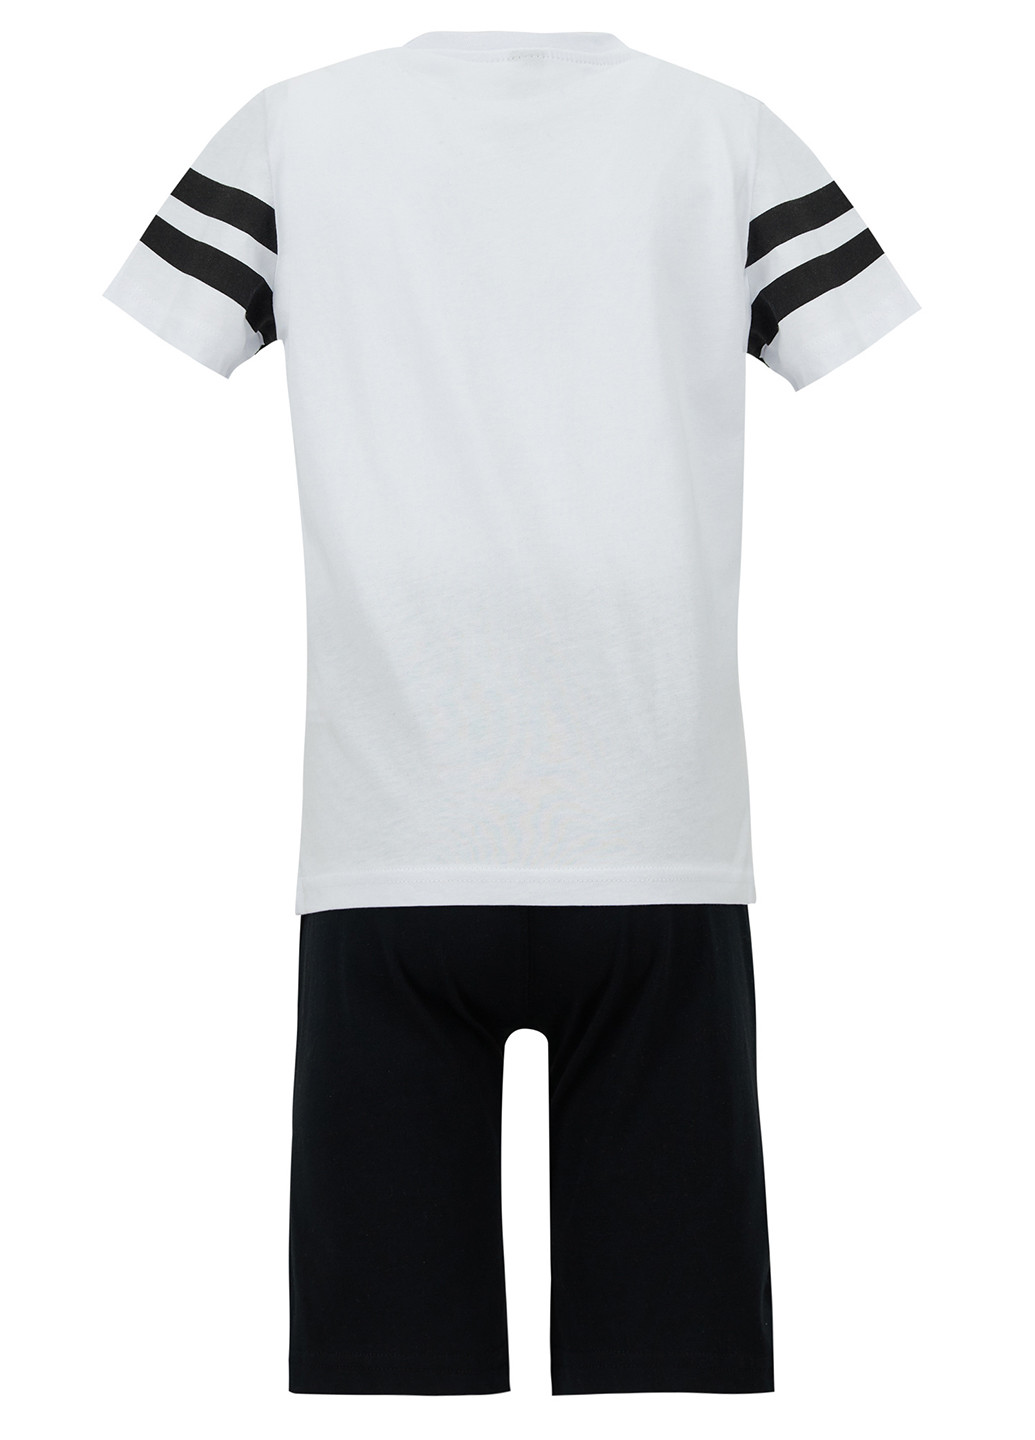 Комплект(шорты, футболка) DeFacto с шортами чёрно-белого спортивный хлопок, трикотаж